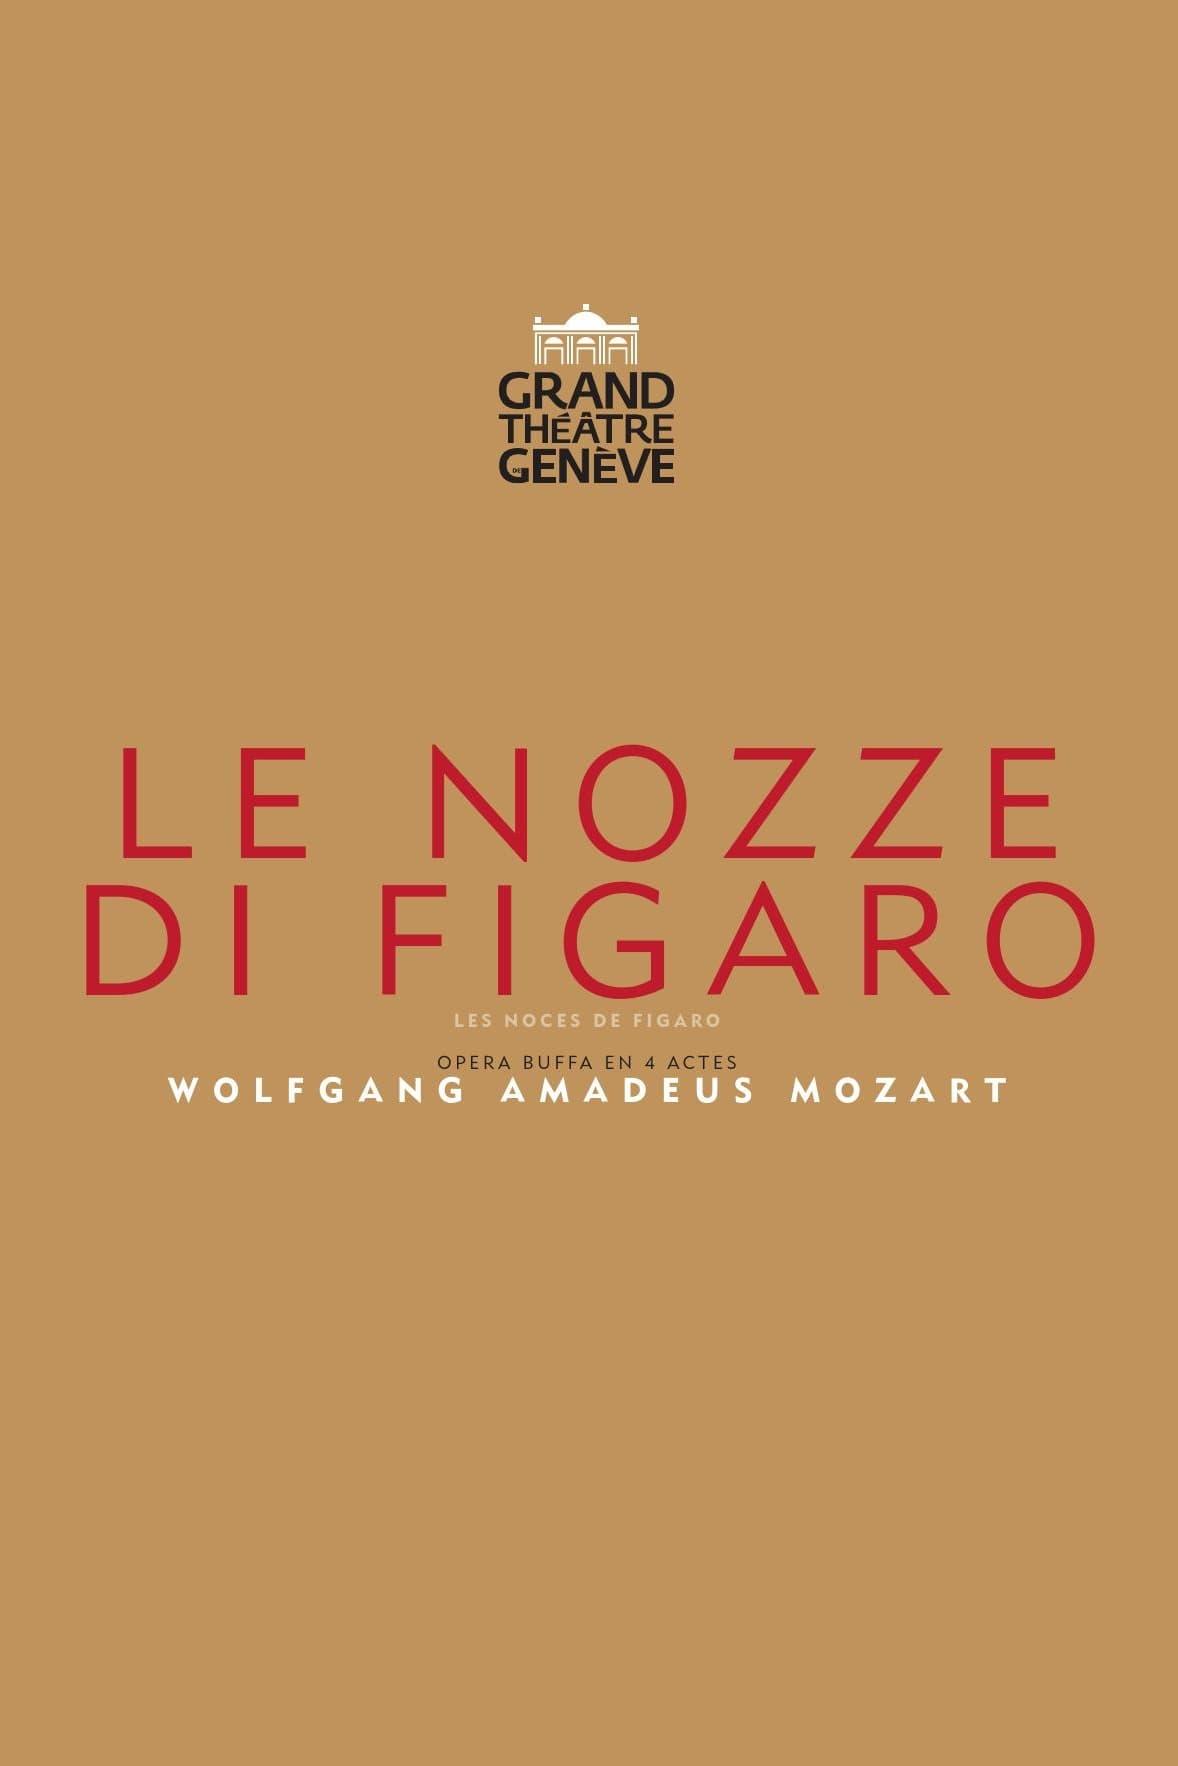 Le Nozze di Figaro — Grand Théâtre de Genève poster